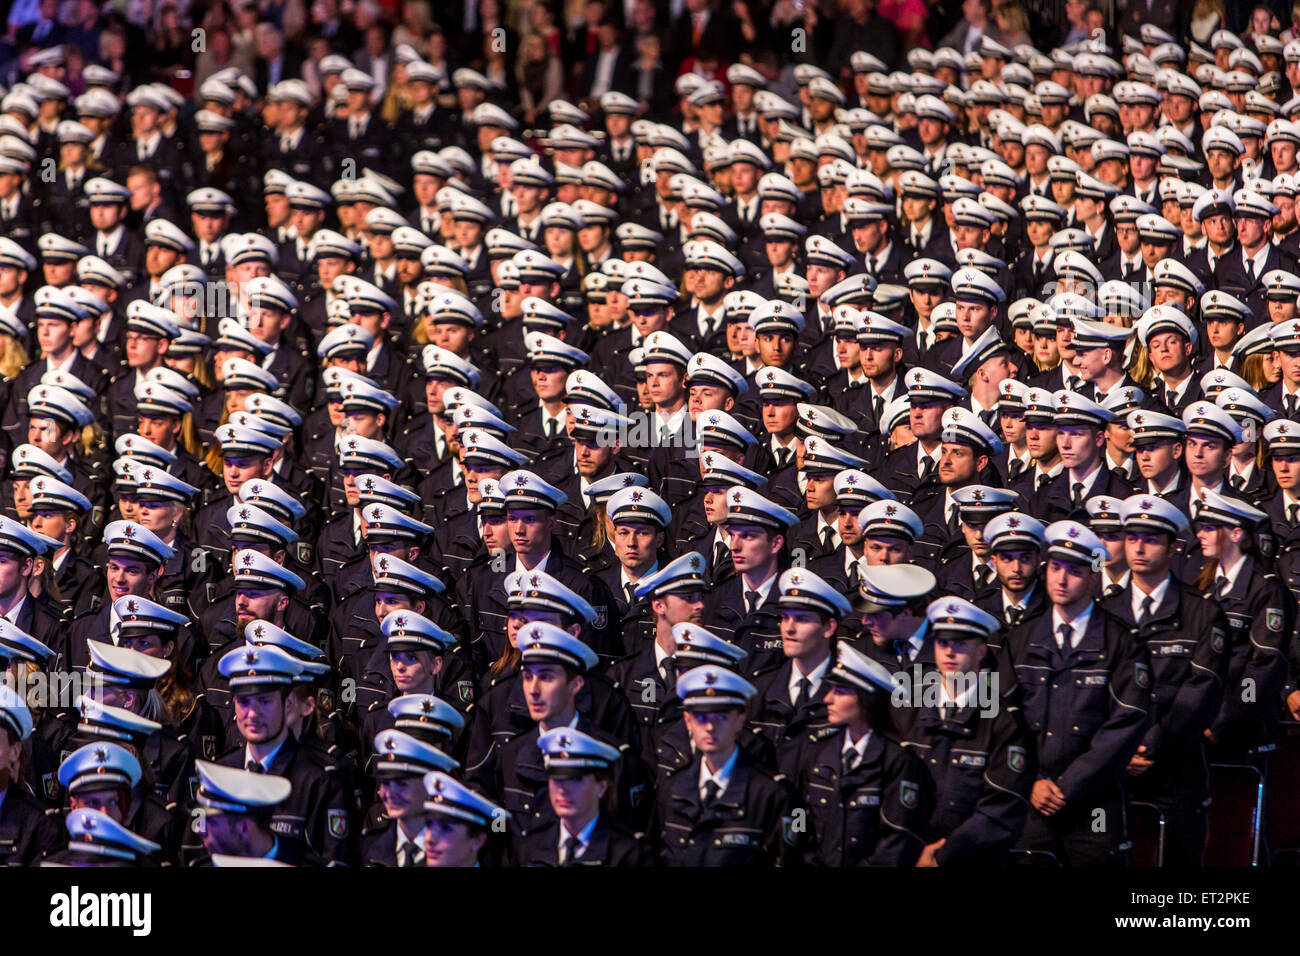 1500 assermentation de nouveaux policiers dans la région de Dortmund, plus de 6000 membres de la famille et les amis ont regardé la cérémonie. Banque D'Images